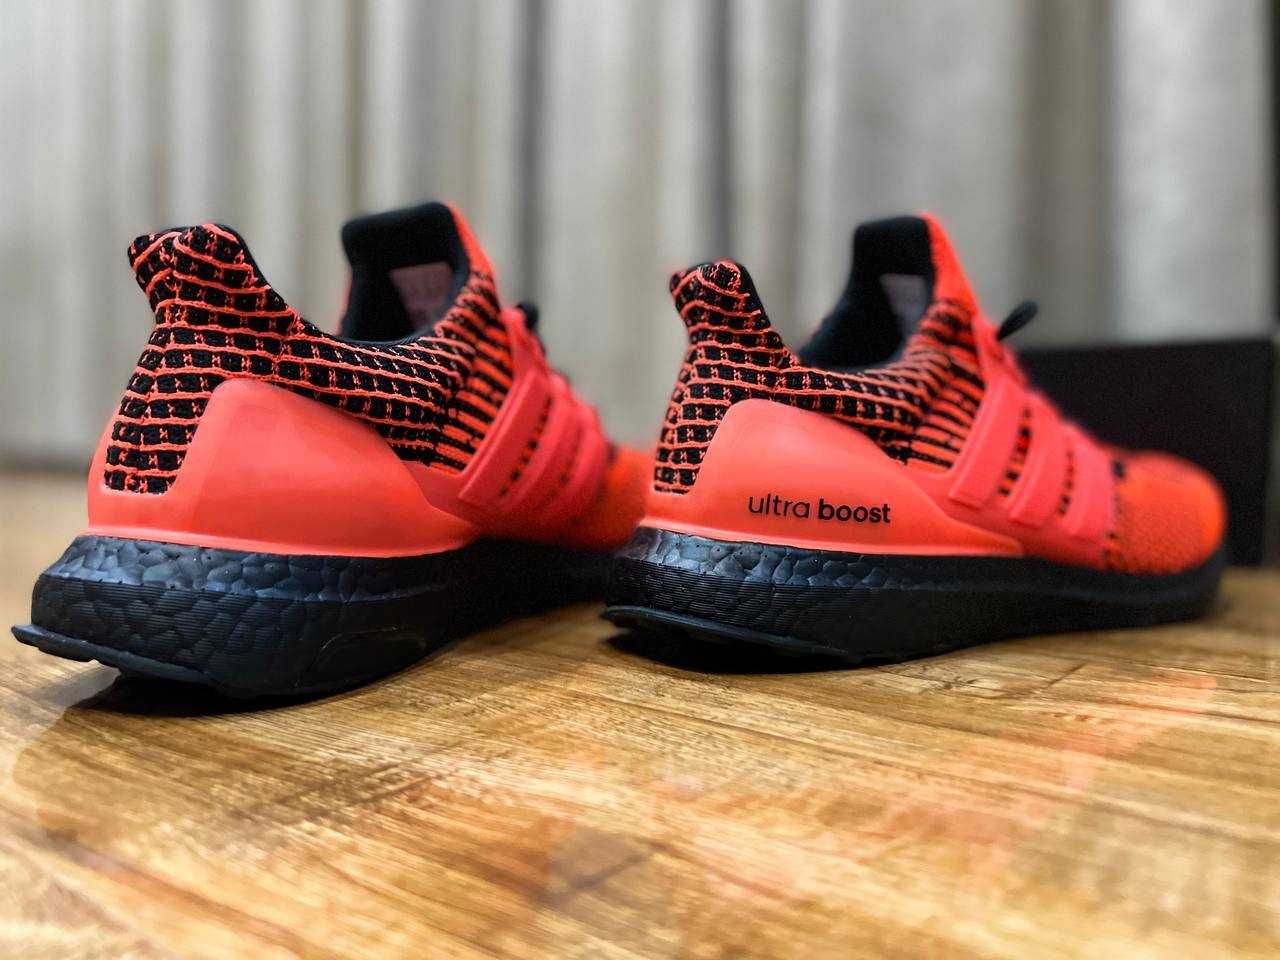 Adidas Ultraboost DNA 5.0 беговые кроссовки